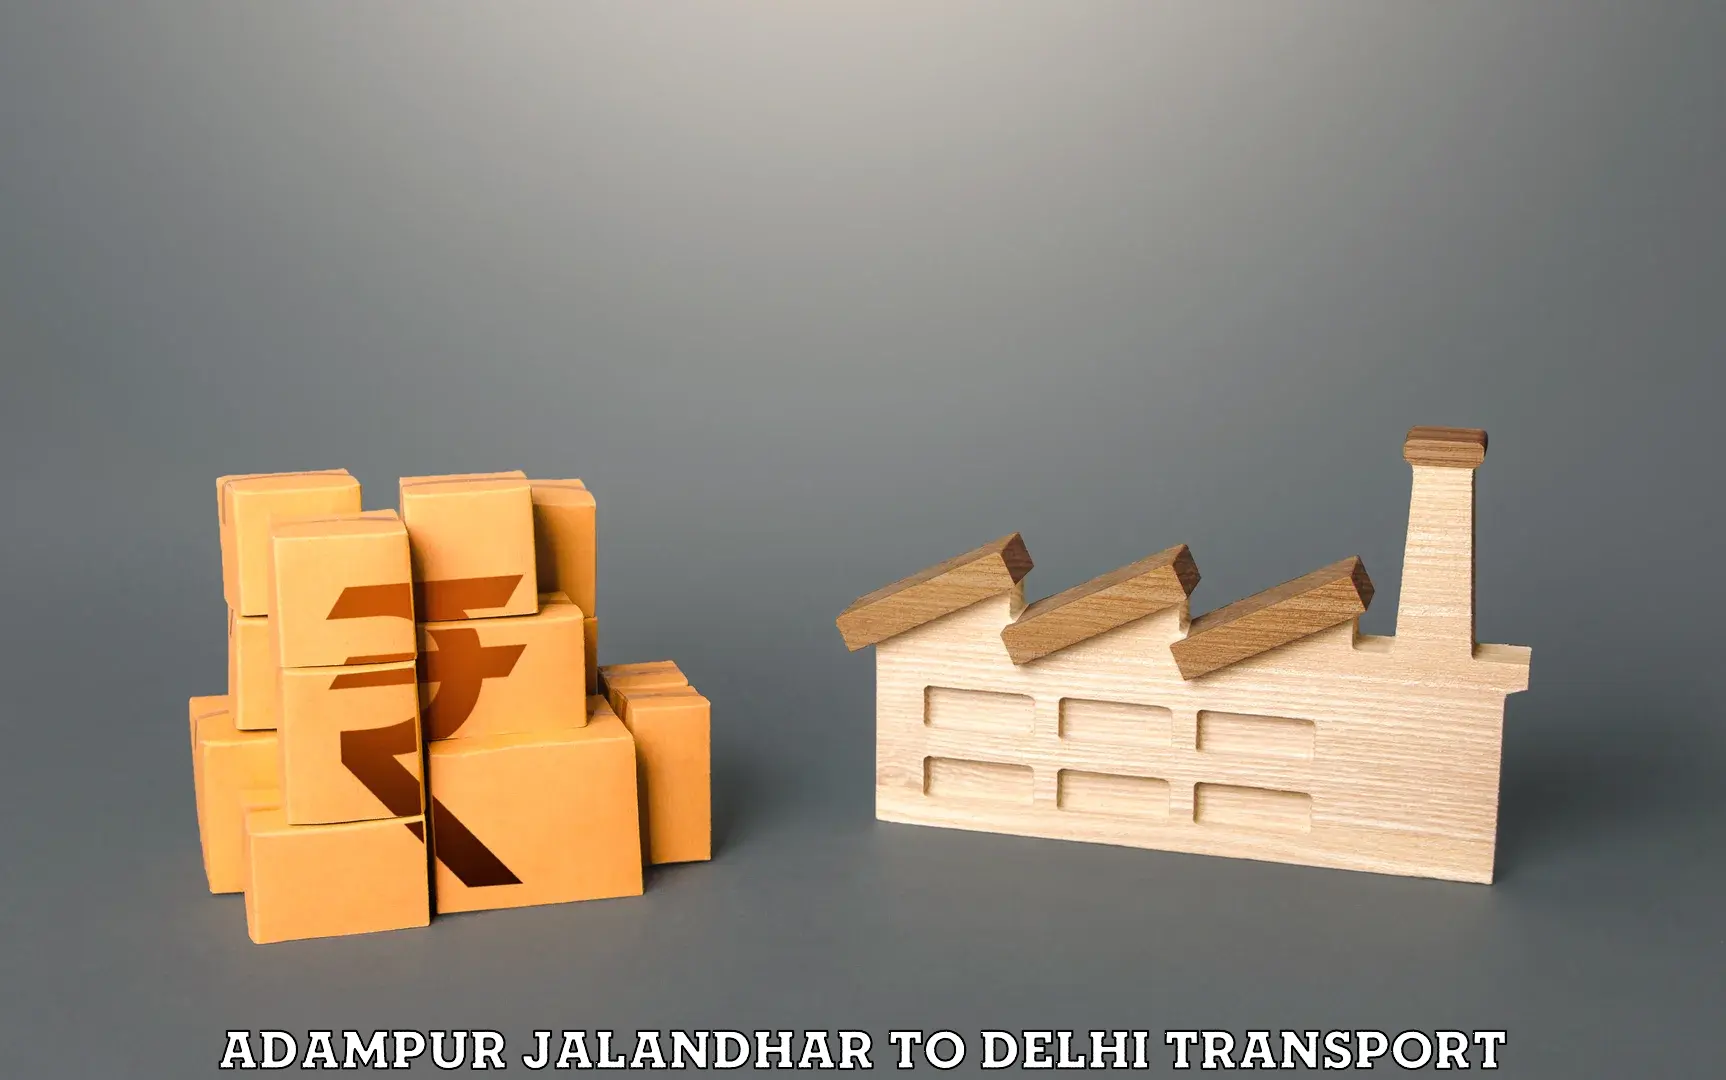 Furniture transport service Adampur Jalandhar to Subhash Nagar